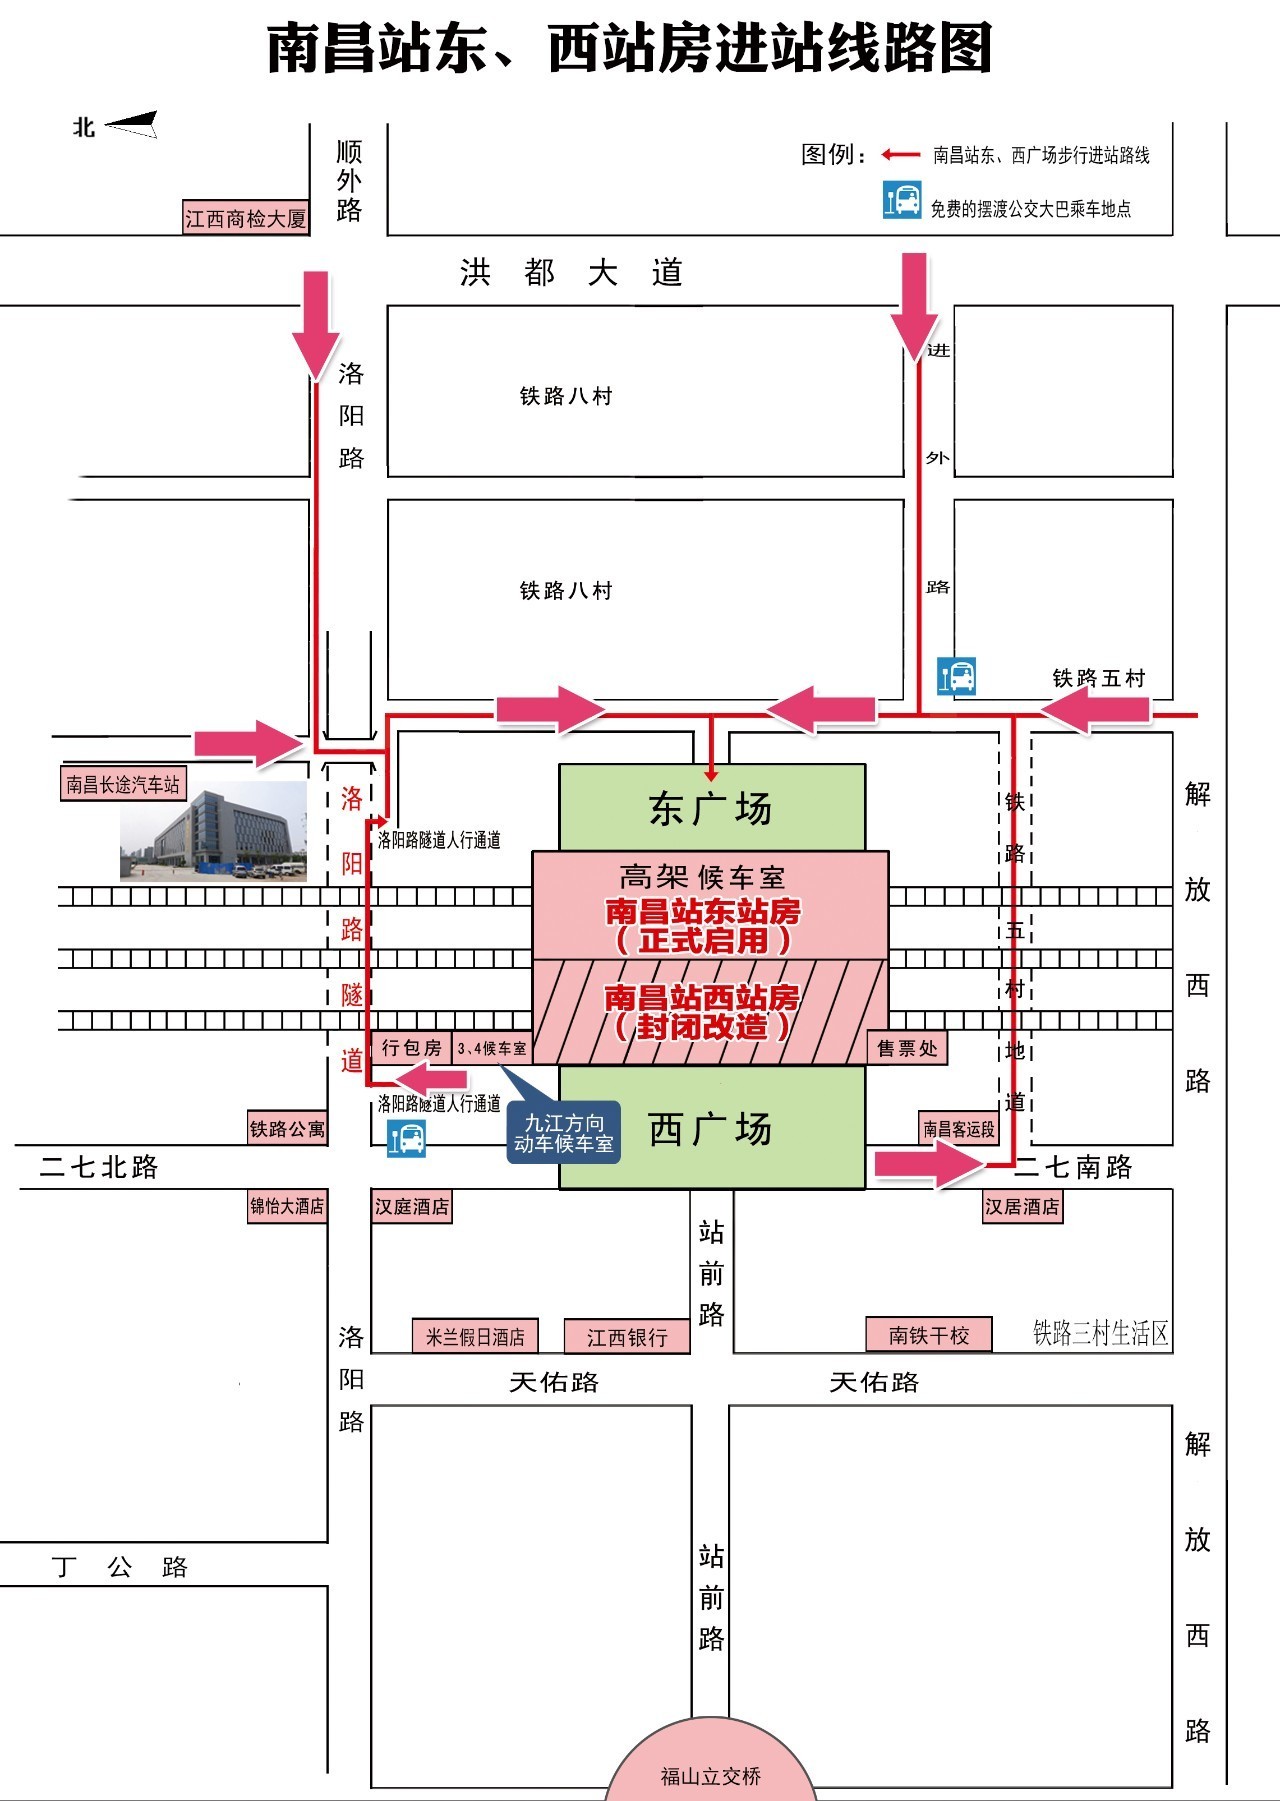 5月31日南昌火车站东站房启用 西站房封闭改造